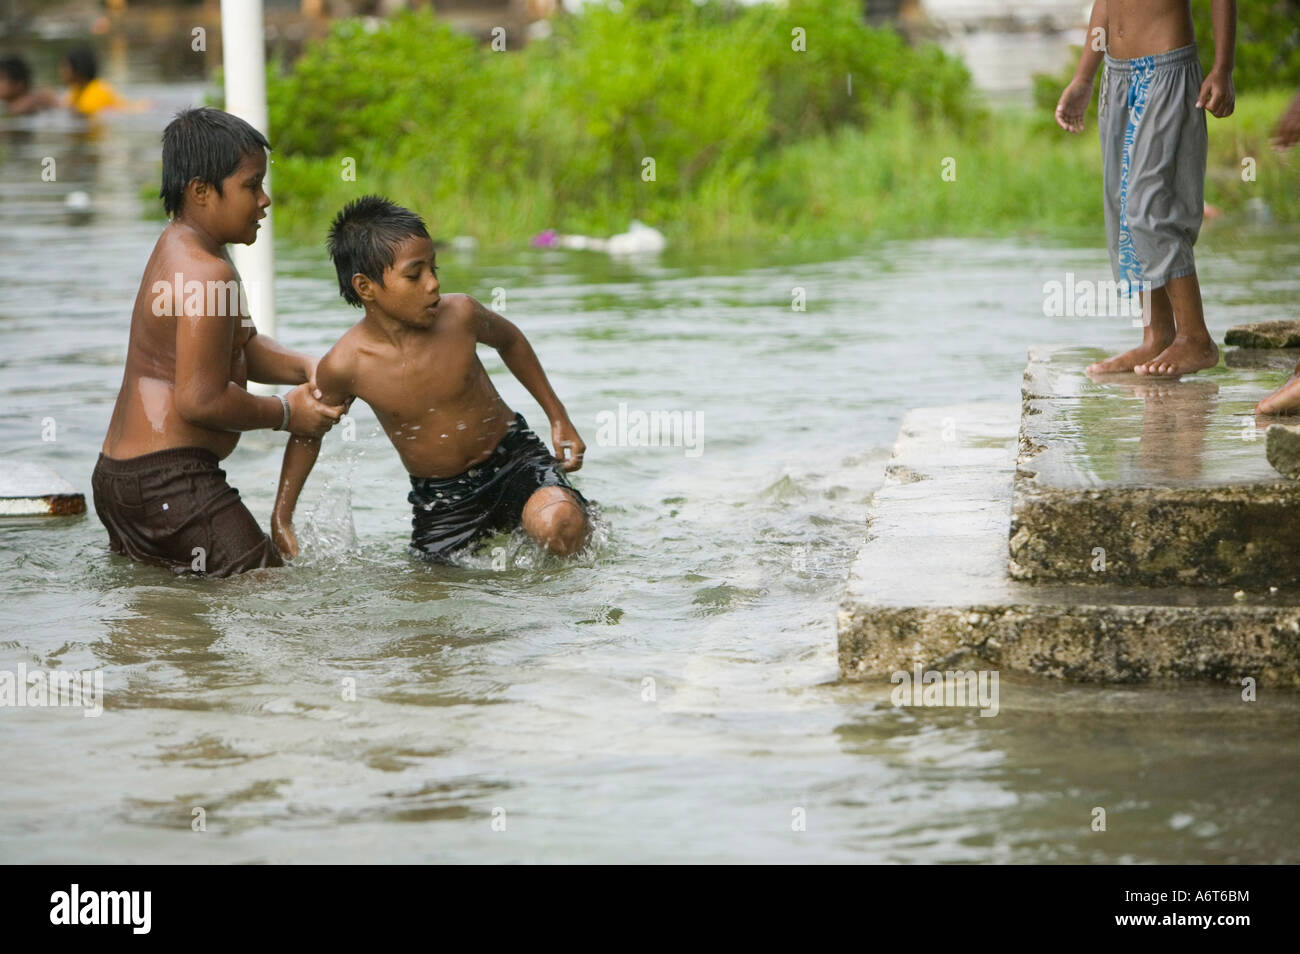 Tuvaluan children escape the rising flood waters on Funafuti Stock Photo